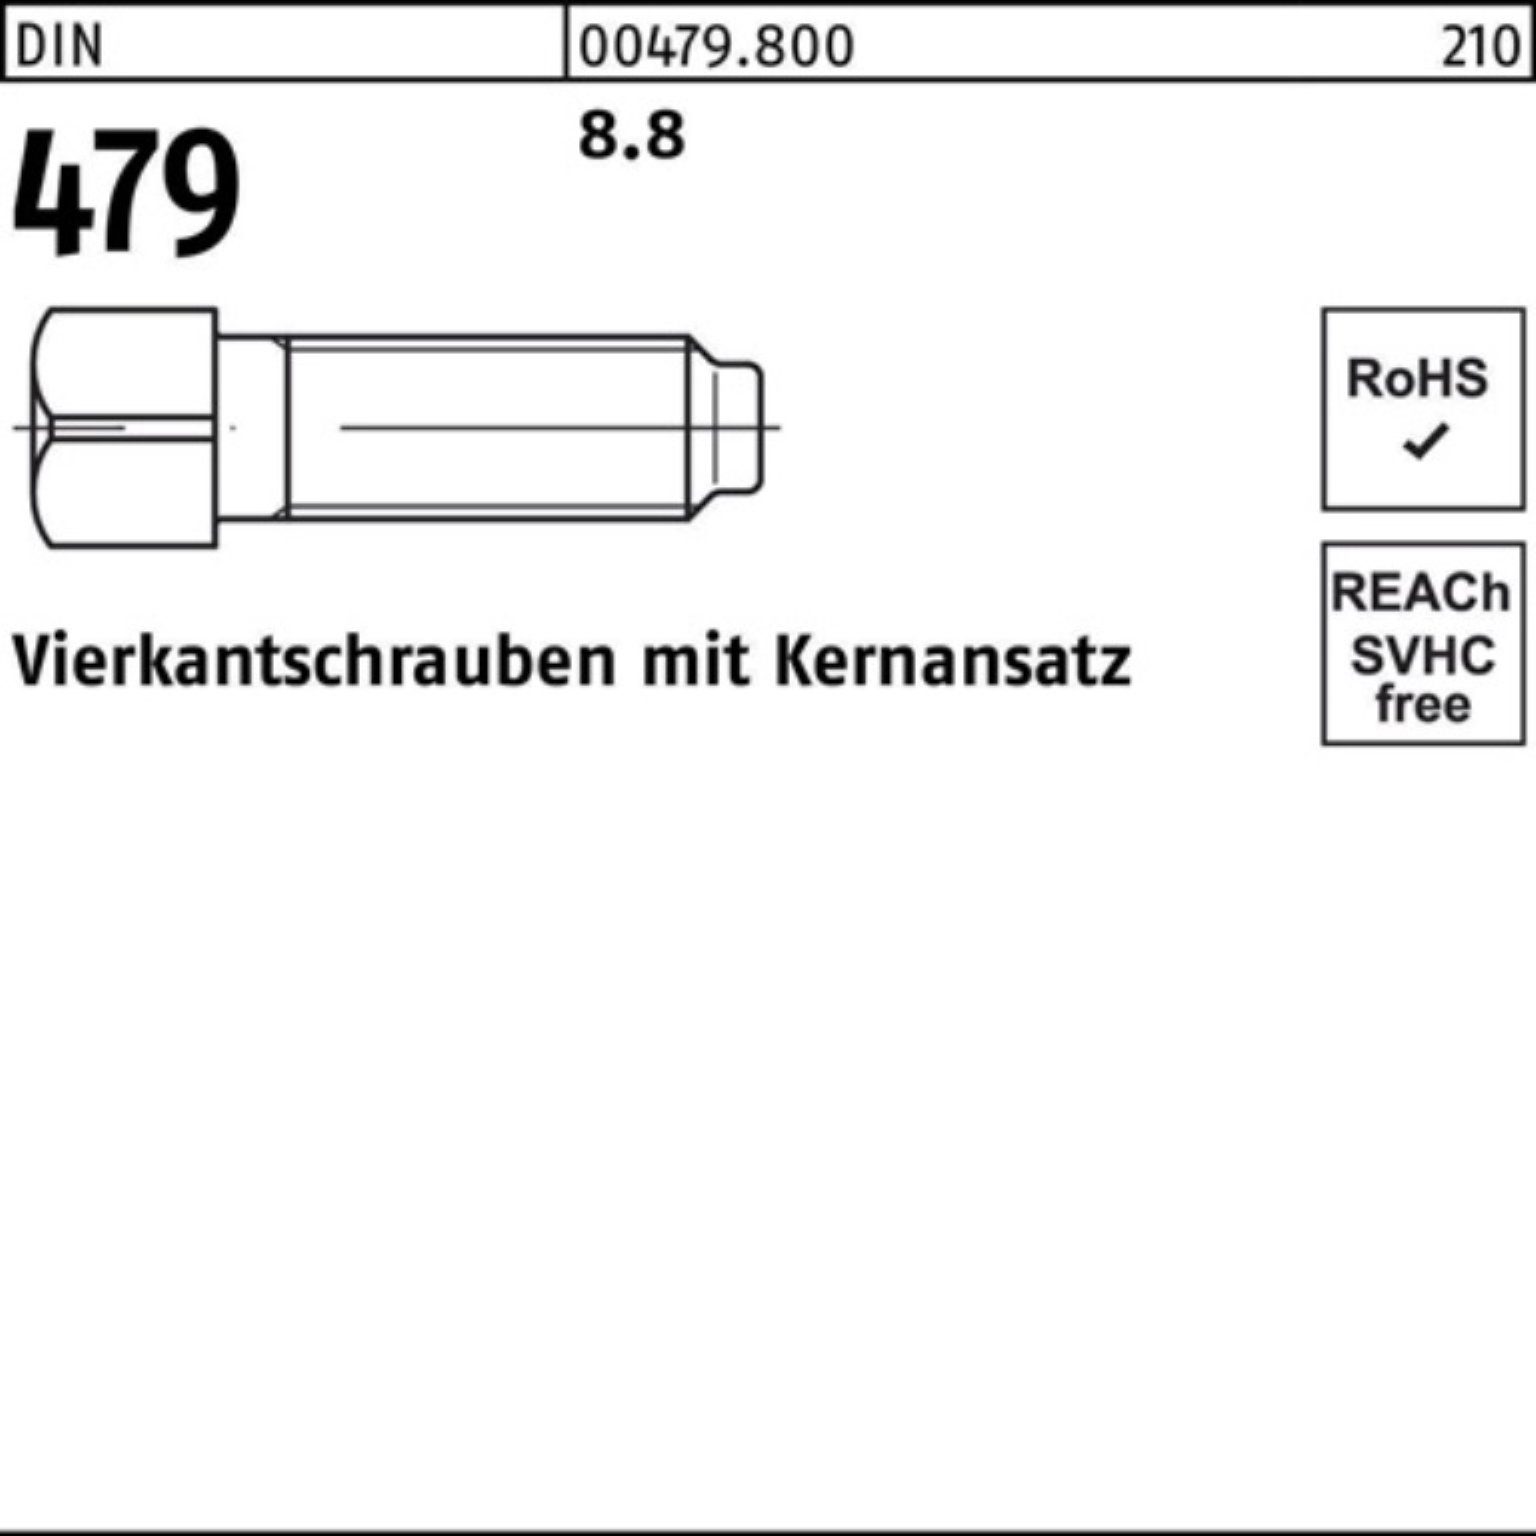 Reyher 100er S Vierkantschraube 120 Kernansatz 479 DIN Pack SW 10 M20x Schraube 22 8.8